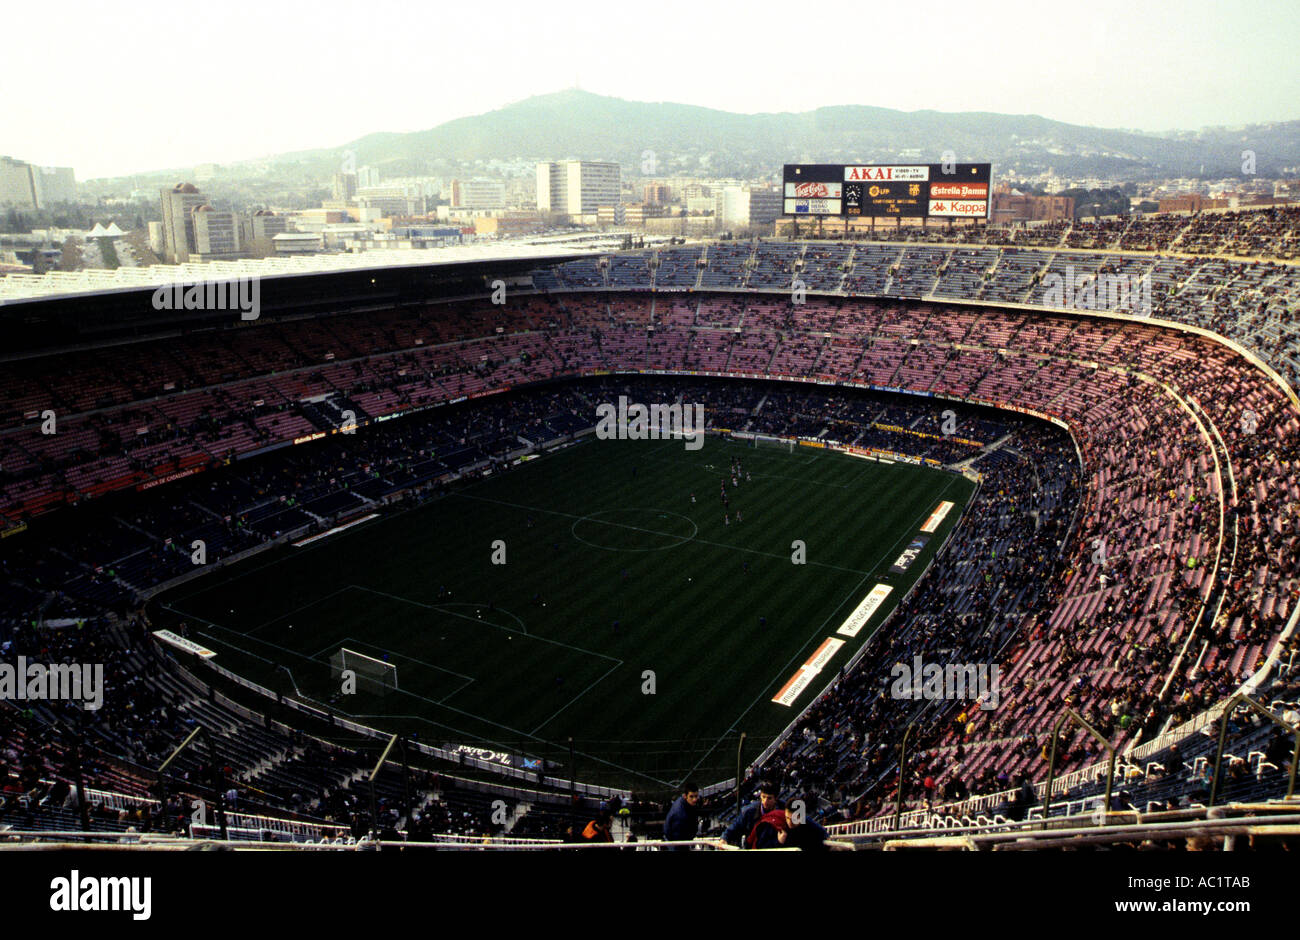 Nou Camp-Stadion, das größte Fußballstadion in Europa und Heimat des FC Barcelona, Spanien. Stockfoto